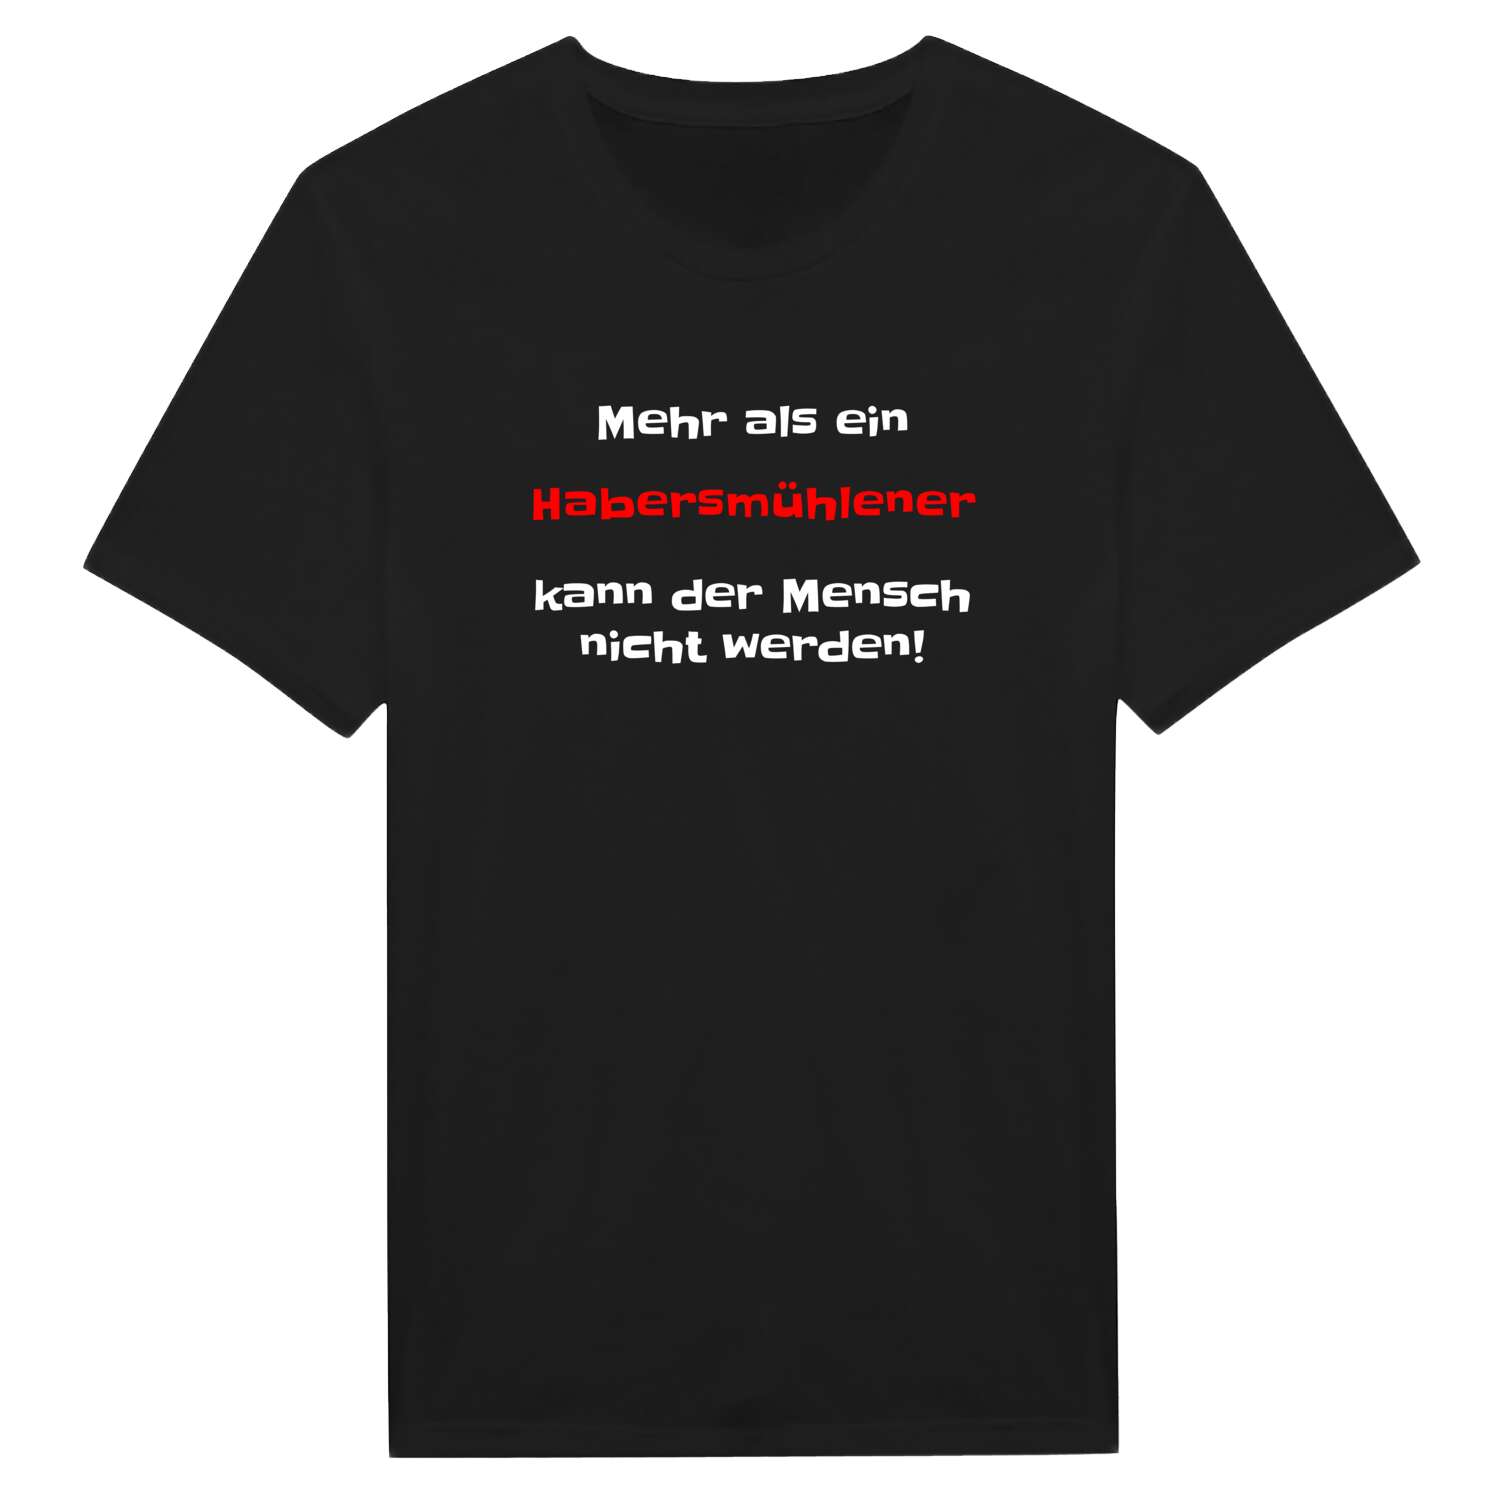 Habersmühle T-Shirt »Mehr als ein«